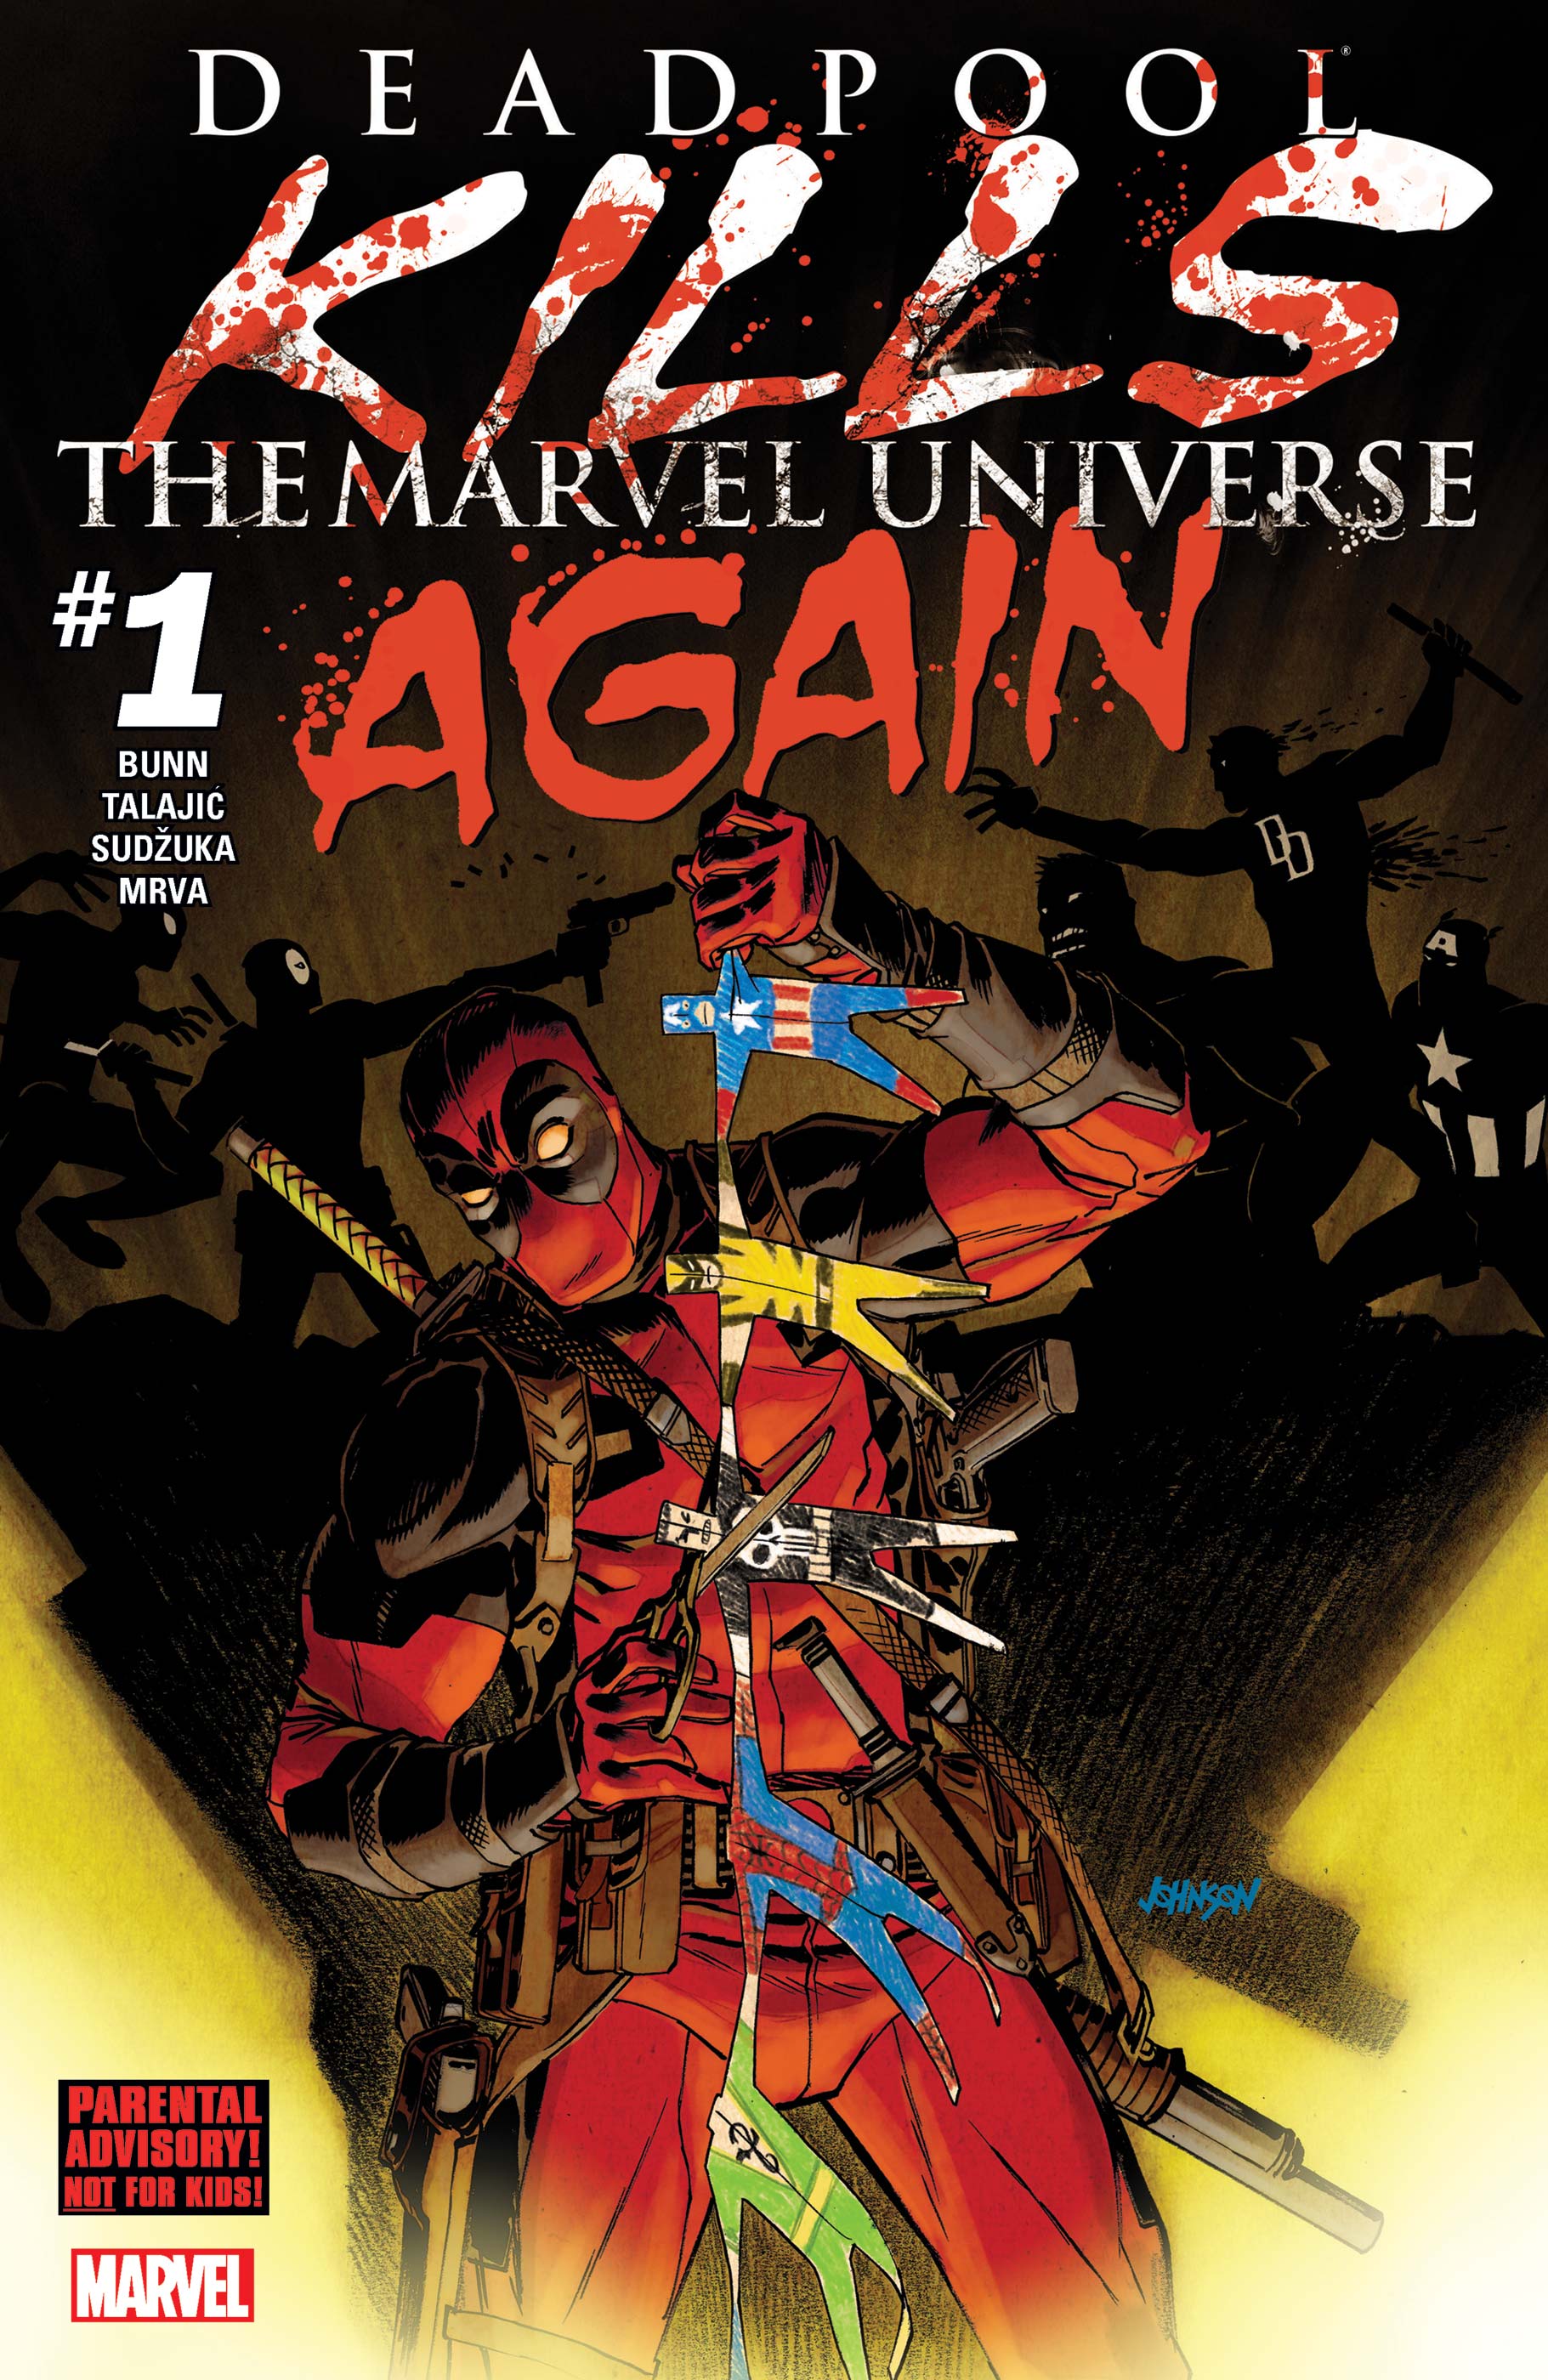 Deadpool kills marvel universe comic